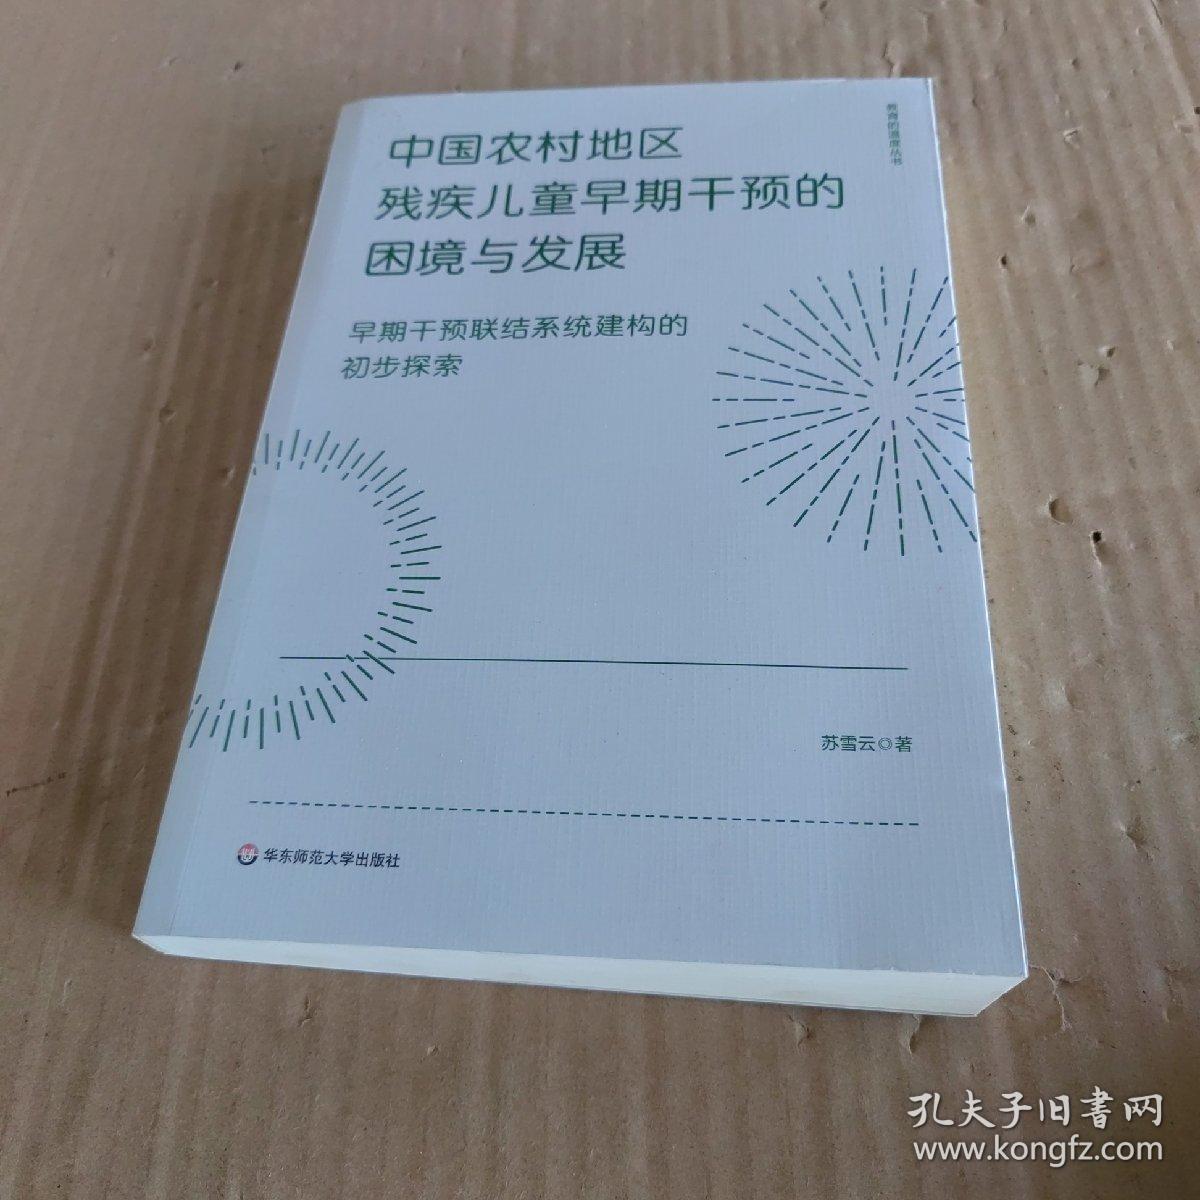 中国农村地区残疾儿童早期干预的困境与发展：早期干预联结系统建构的初步探索